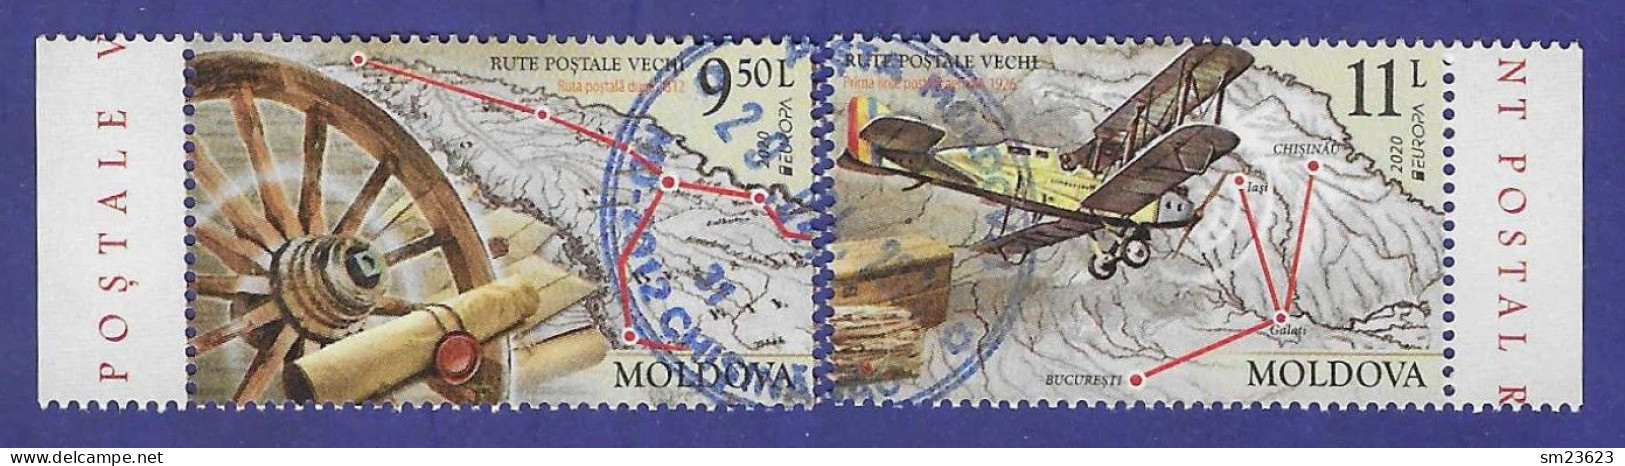 Moldawien / Moldova  2020 , EUROPA CEPT / Postwege - Gestempelt / Fine Used (o) - 2020